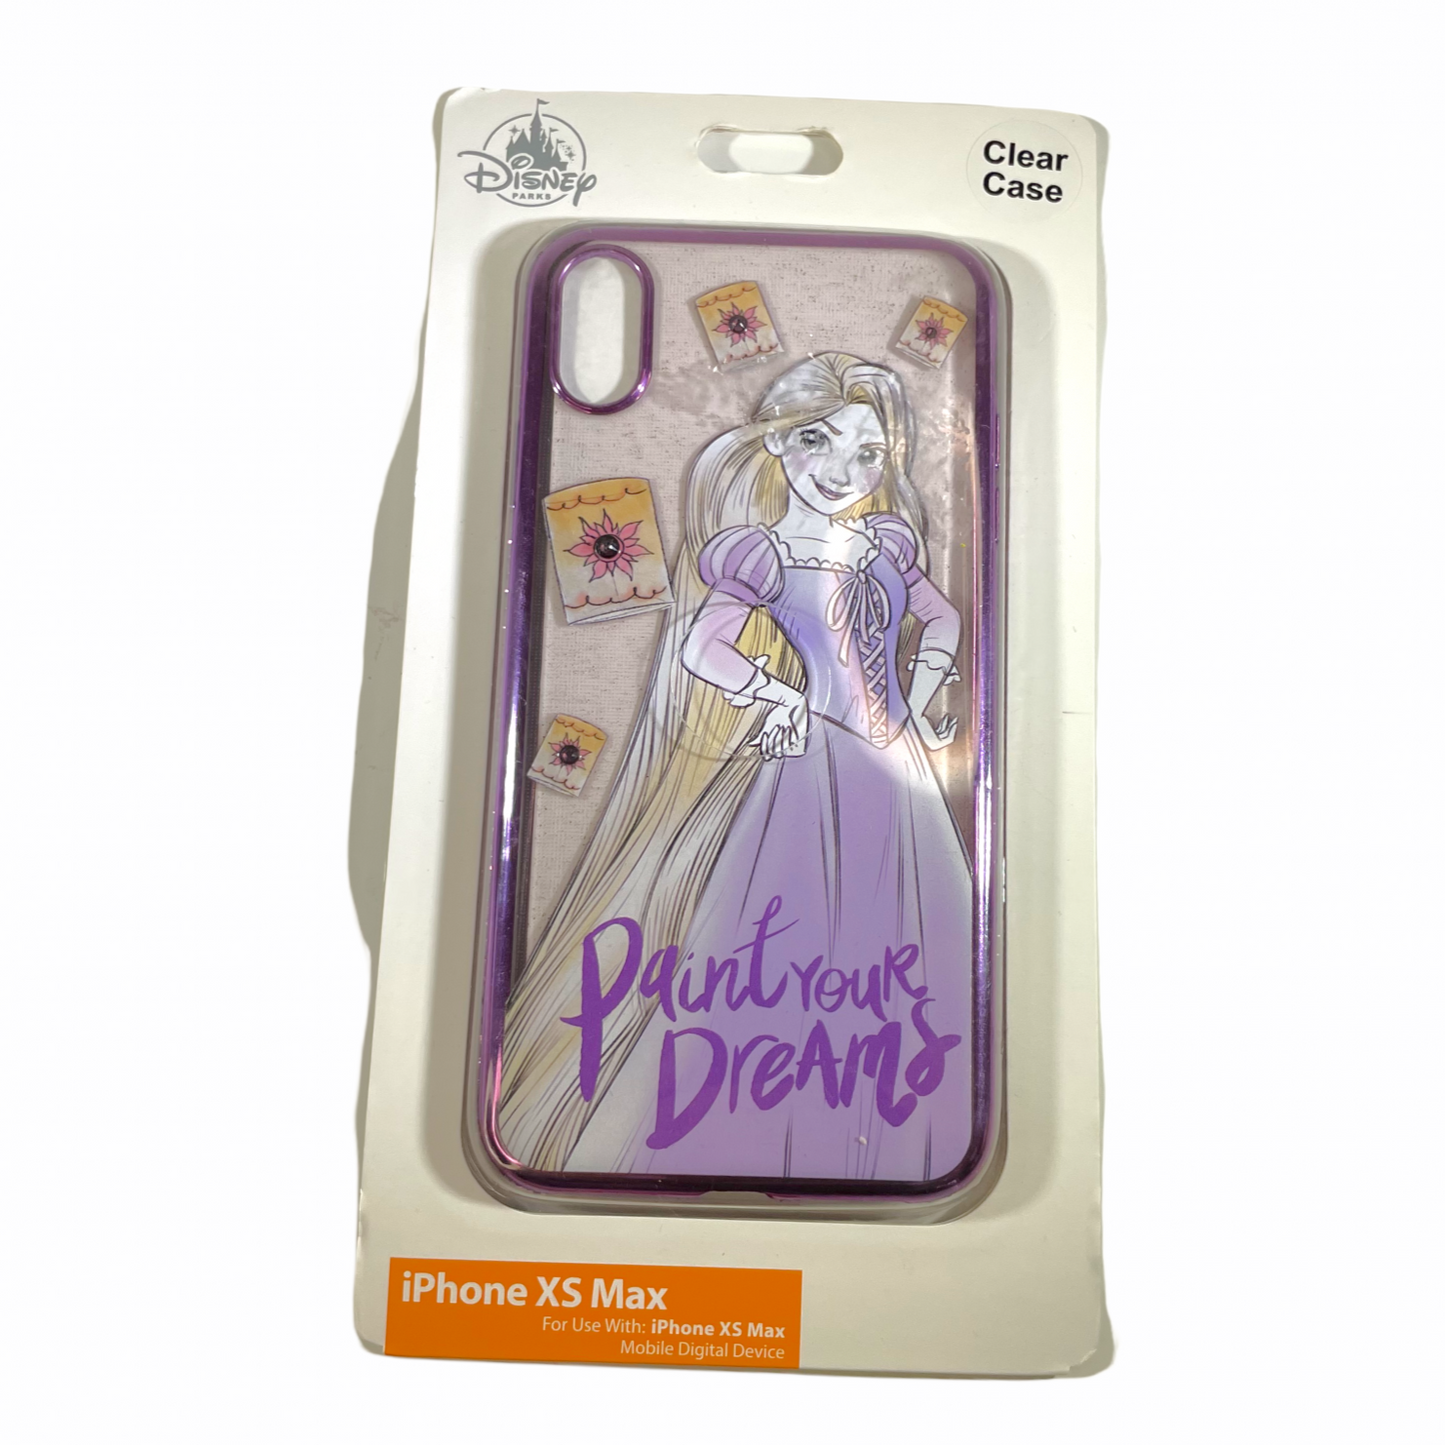 Rapunzel "Paint Your Dreams" Disney IPhone XS Max Case